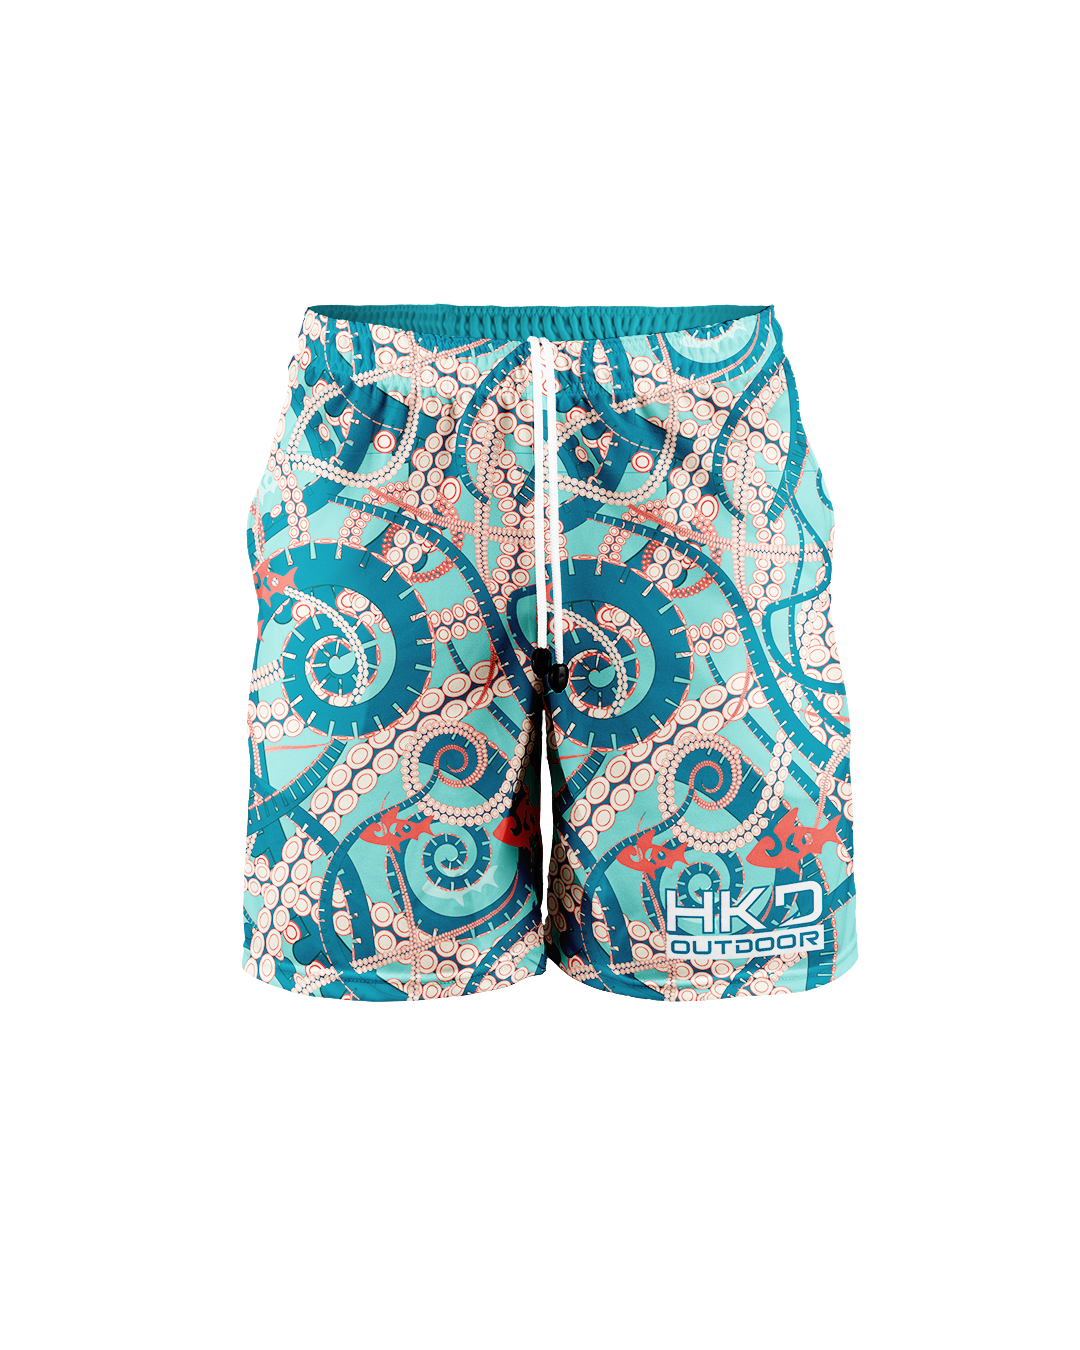 Pantaloni corti Octopus - HKD Outdoor ® - abbigliamento tecnico pesca